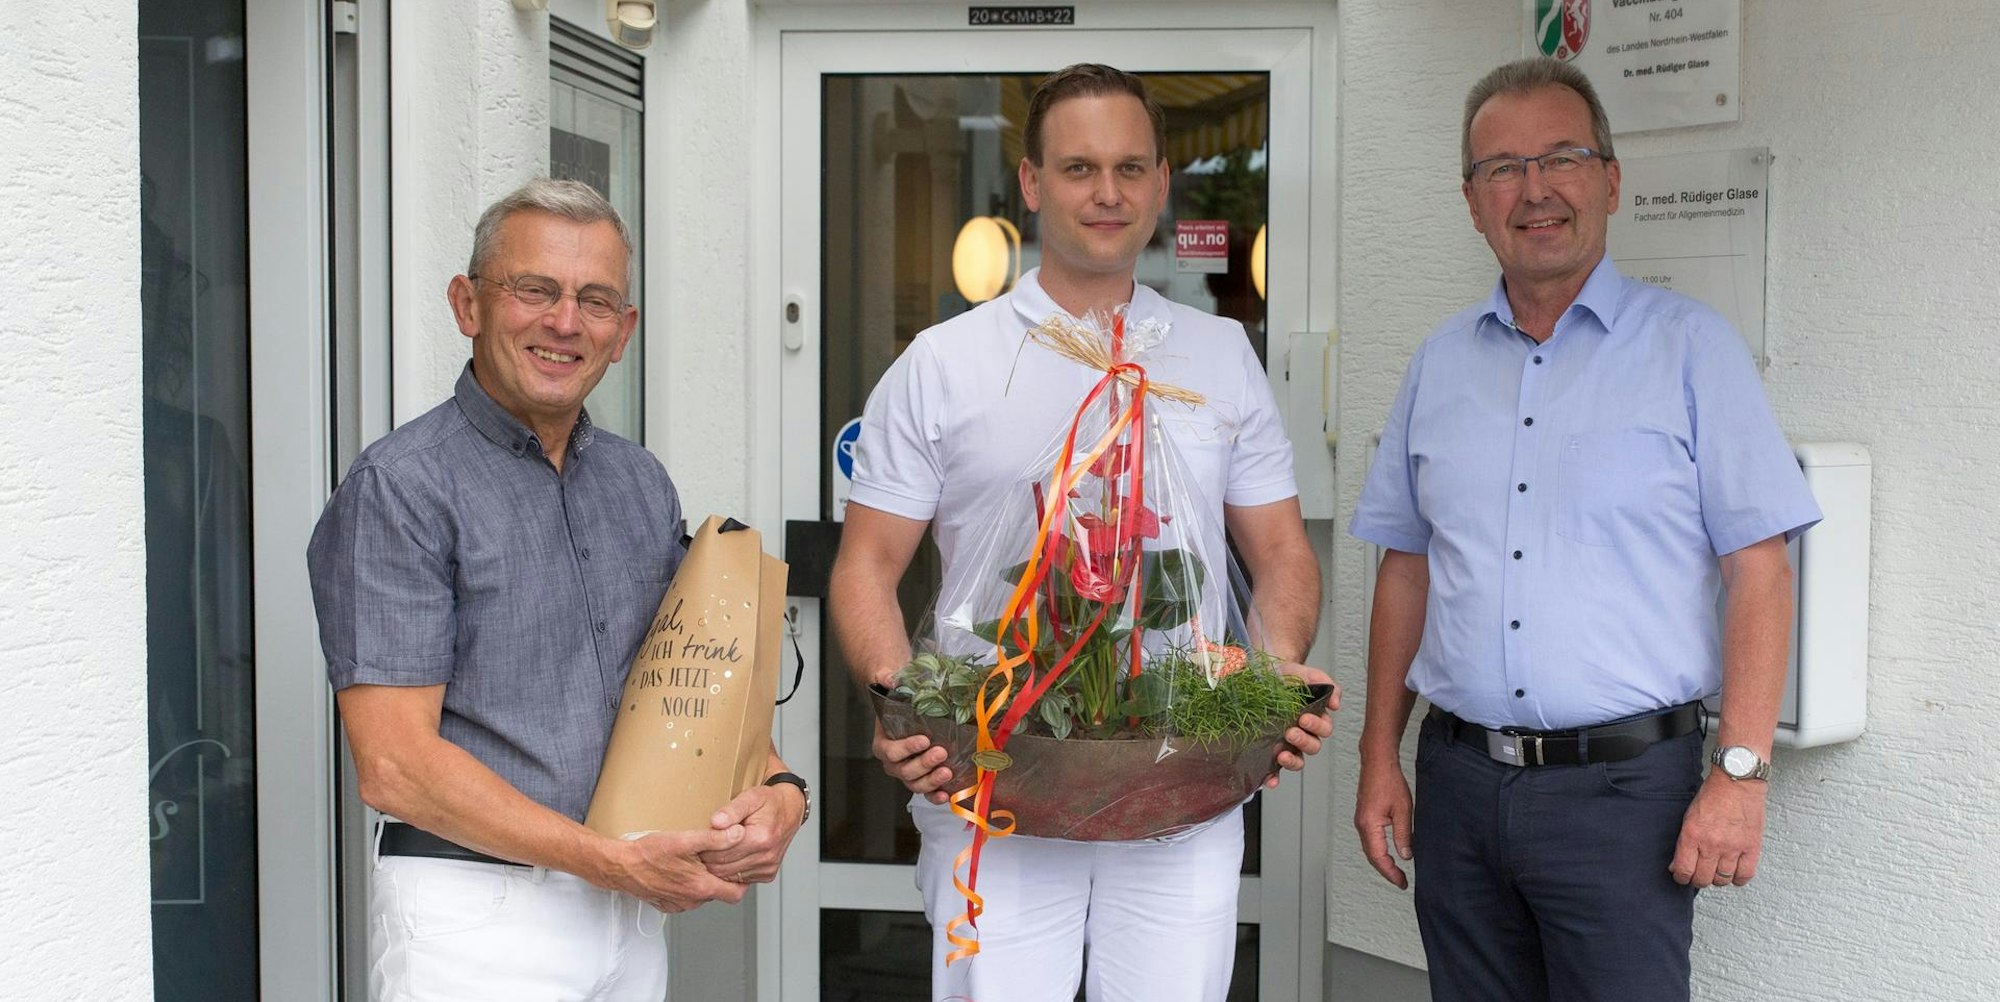 Zum Dienstantritt gratulierte (v.r.) Bürgermeister Rüdiger Gennies den Ärzten Dr. Hendrik Halvar und Dr. Rüdiger Glase.